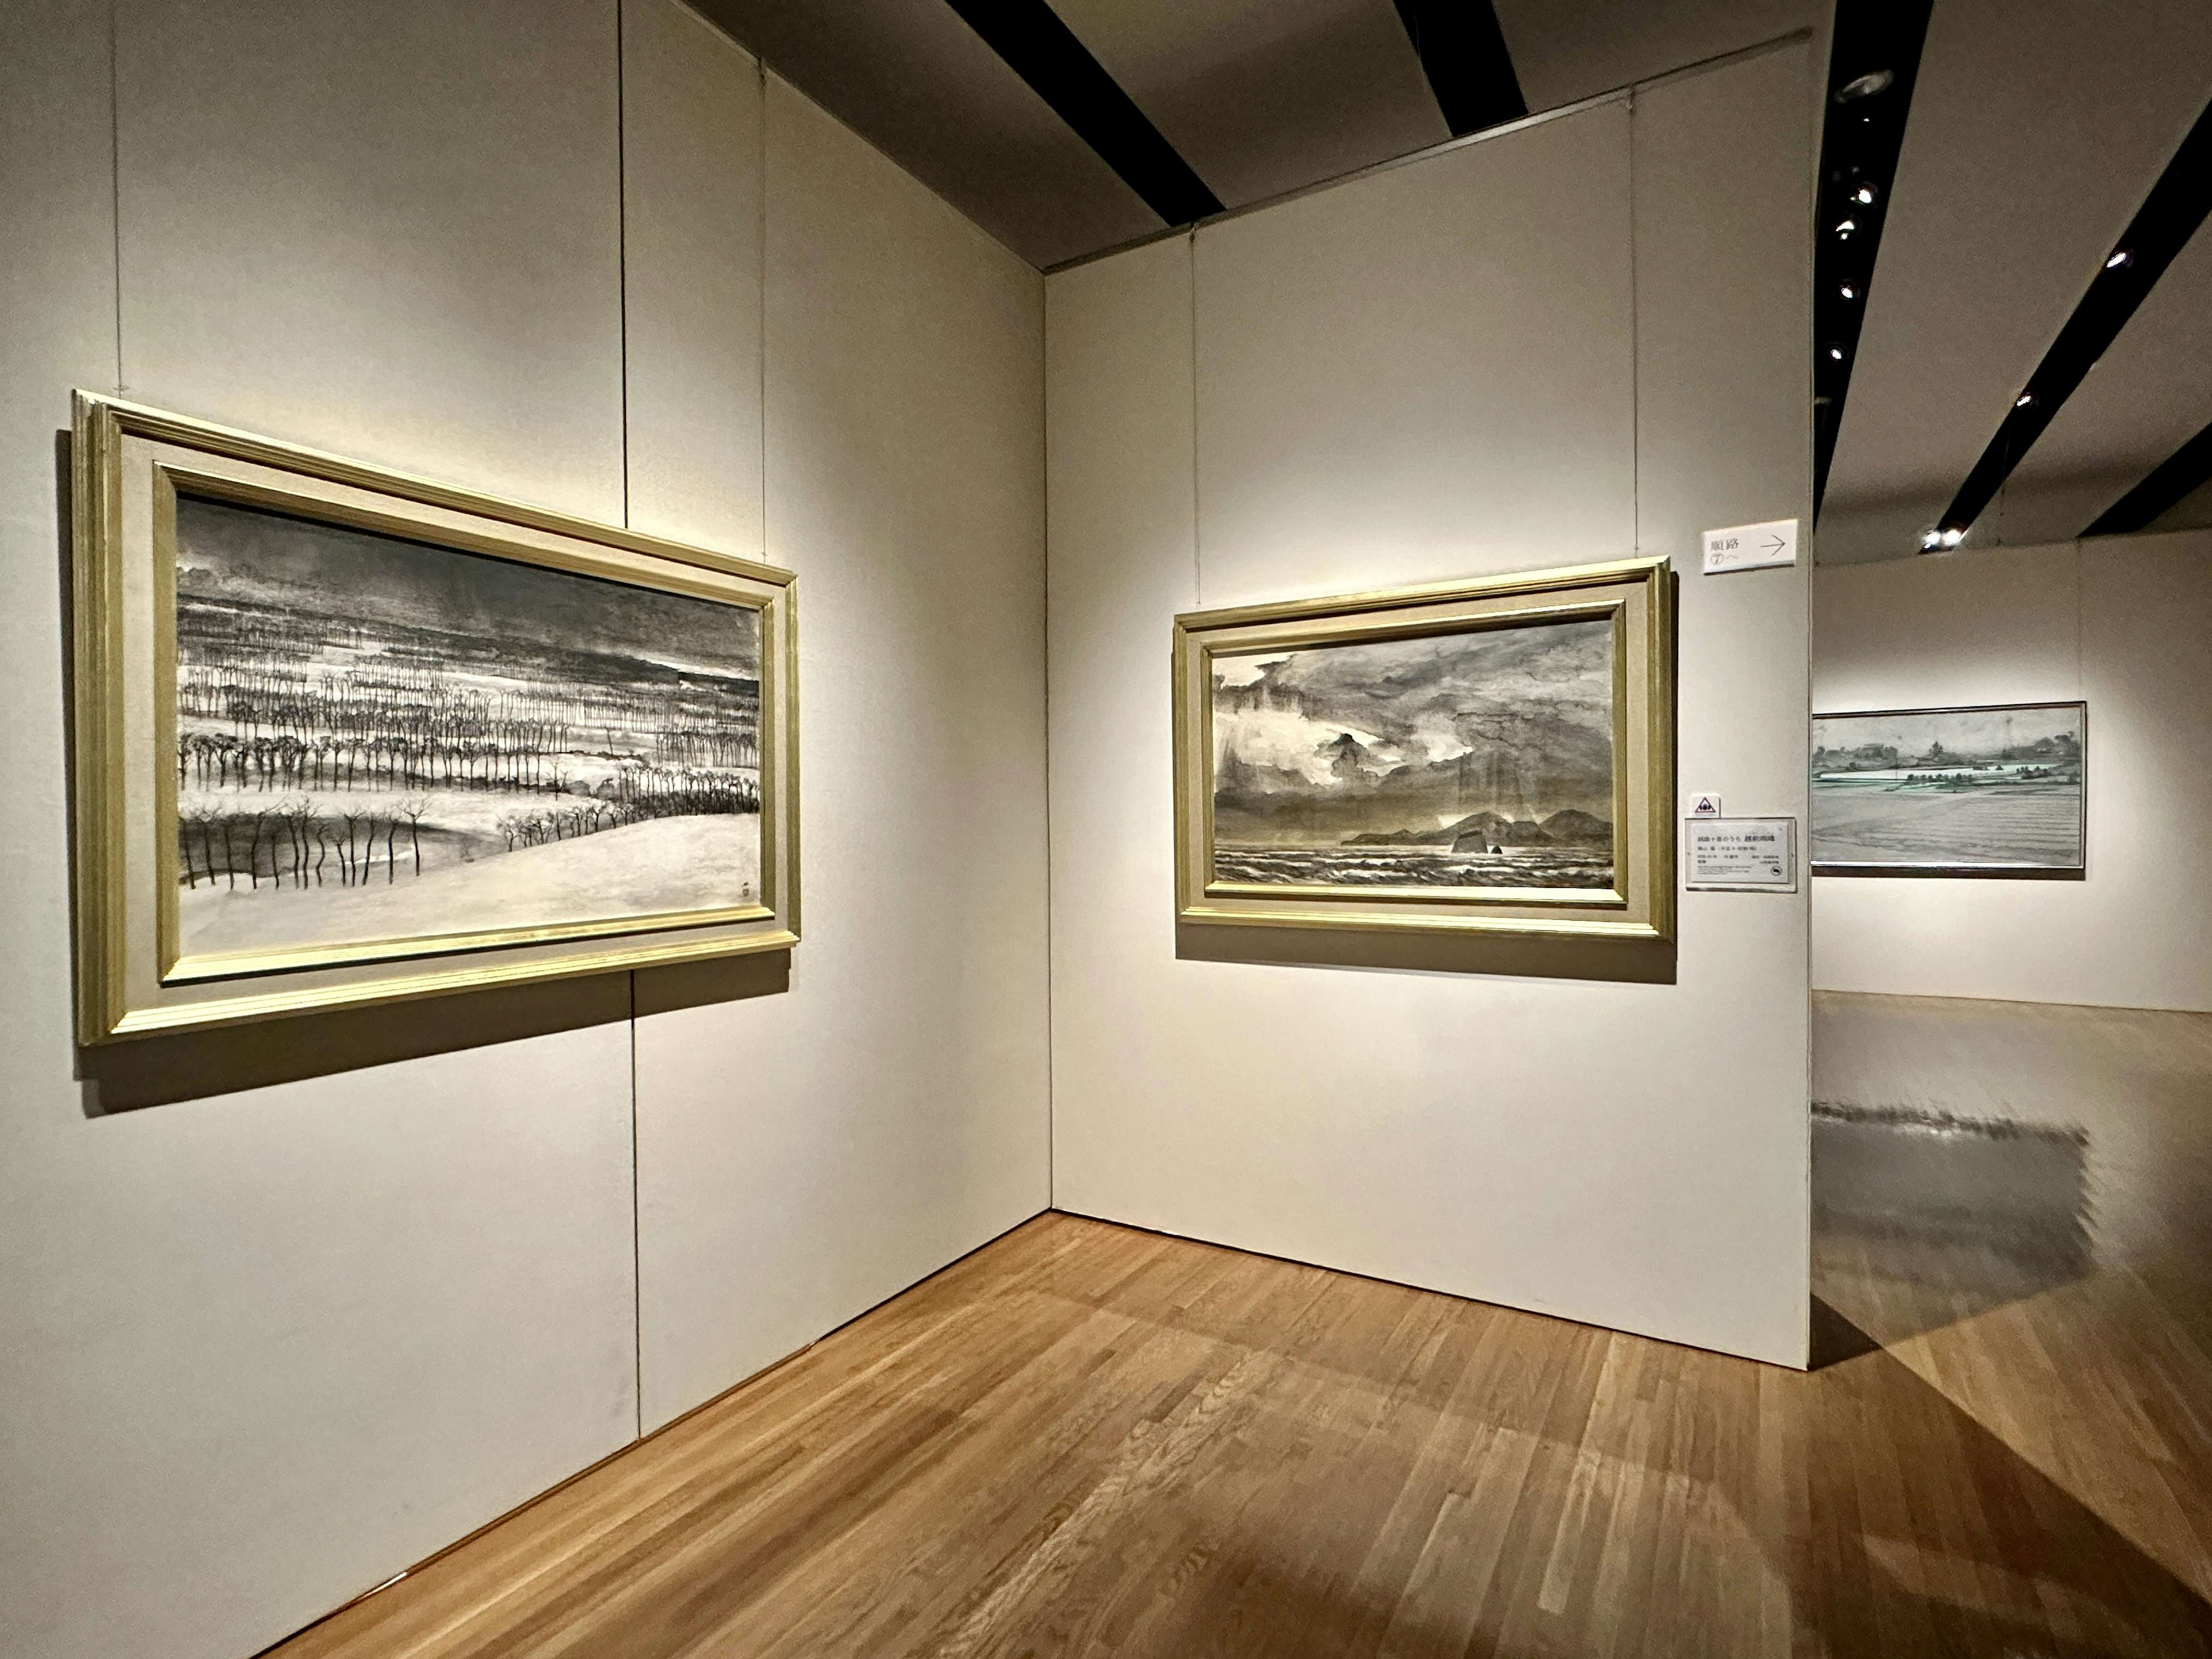 日本の風景」はいかに描かれてきたのか。山種美術館で見るその変遷